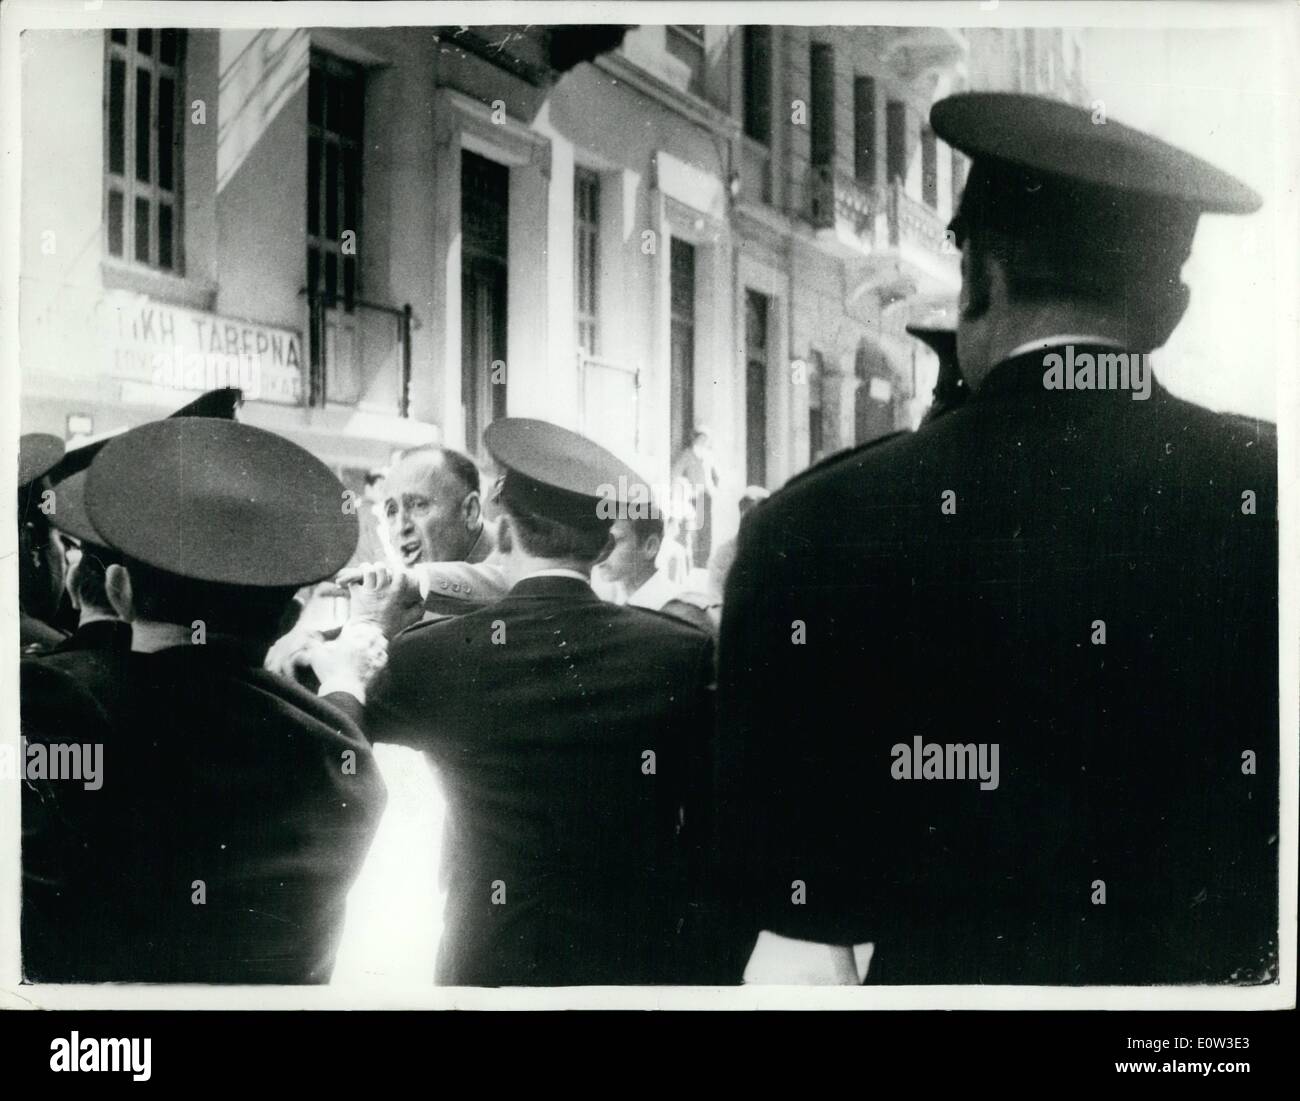 Mai 05, 1961 - La police grecque cruet heathen par policiers- par erreur fax pas - à Athènes. Une force de police patrouillaient dans les rues d'Athènes, au cours de la journée peut paraden - afin d'éviter toute difficulté qui pourrait être mis en cage par les communistes. Lorsqu'un groupe de communistes a essayé de marcher vers le centre d'Athènes - la police les a dispersés .Toutefois, après le groupe des communistes a été papaspyropcules - Inspecteur en civil Banque D'Images